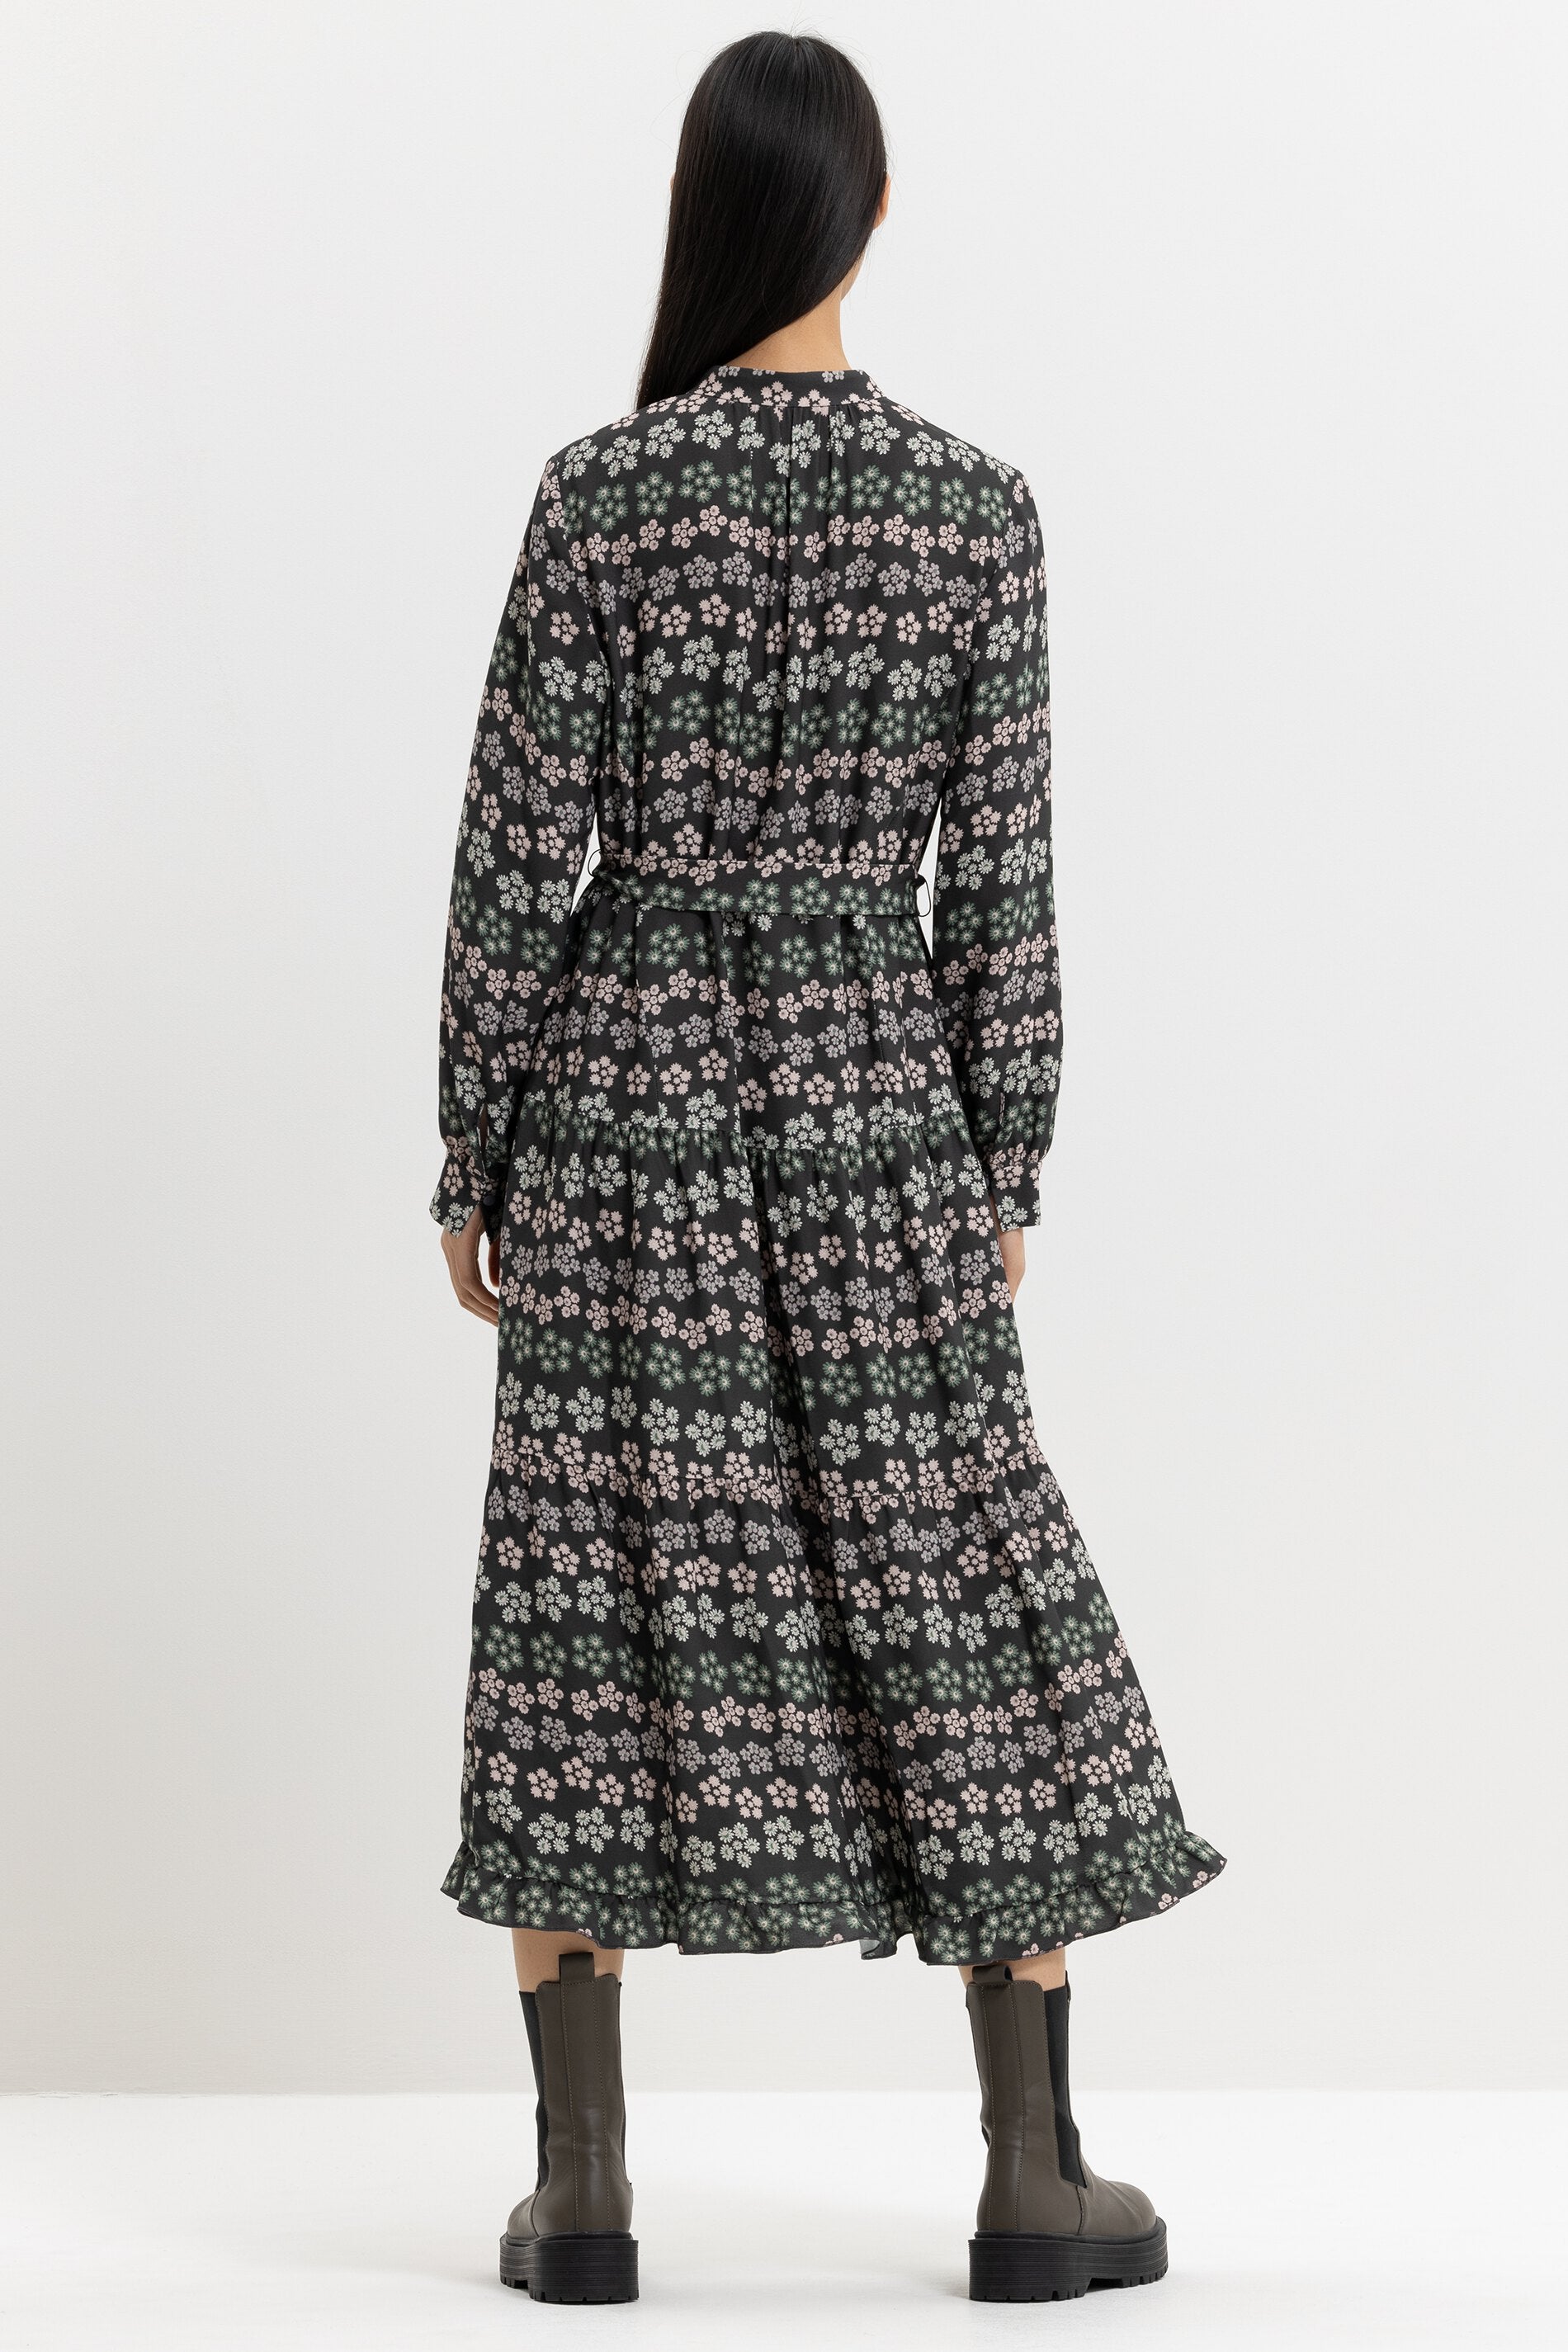 LUISA CERANO-OUTLET-SALE-Kleid mit Millefleurs-Print-Kleider & Röcke-by-ARCHIVIST